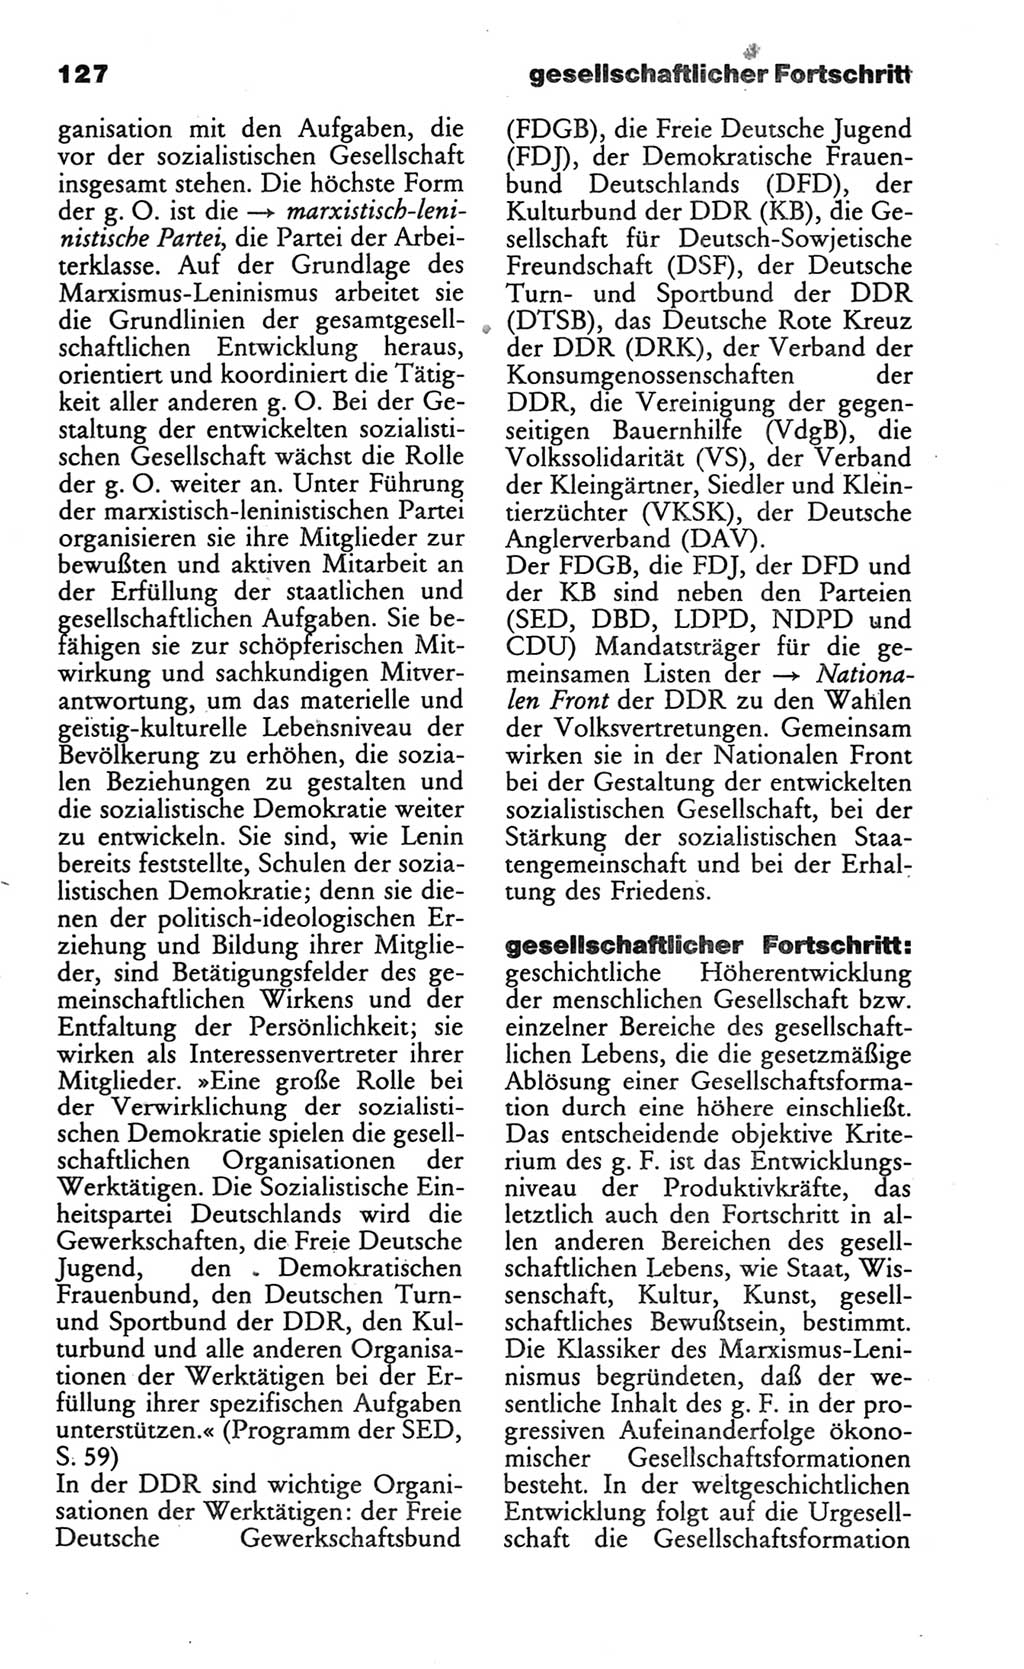 Wörterbuch des wissenschaftlichen Kommunismus [Deutsche Demokratische Republik (DDR)] 1986, Seite 127 (Wb. wiss. Komm. DDR 1986, S. 127)